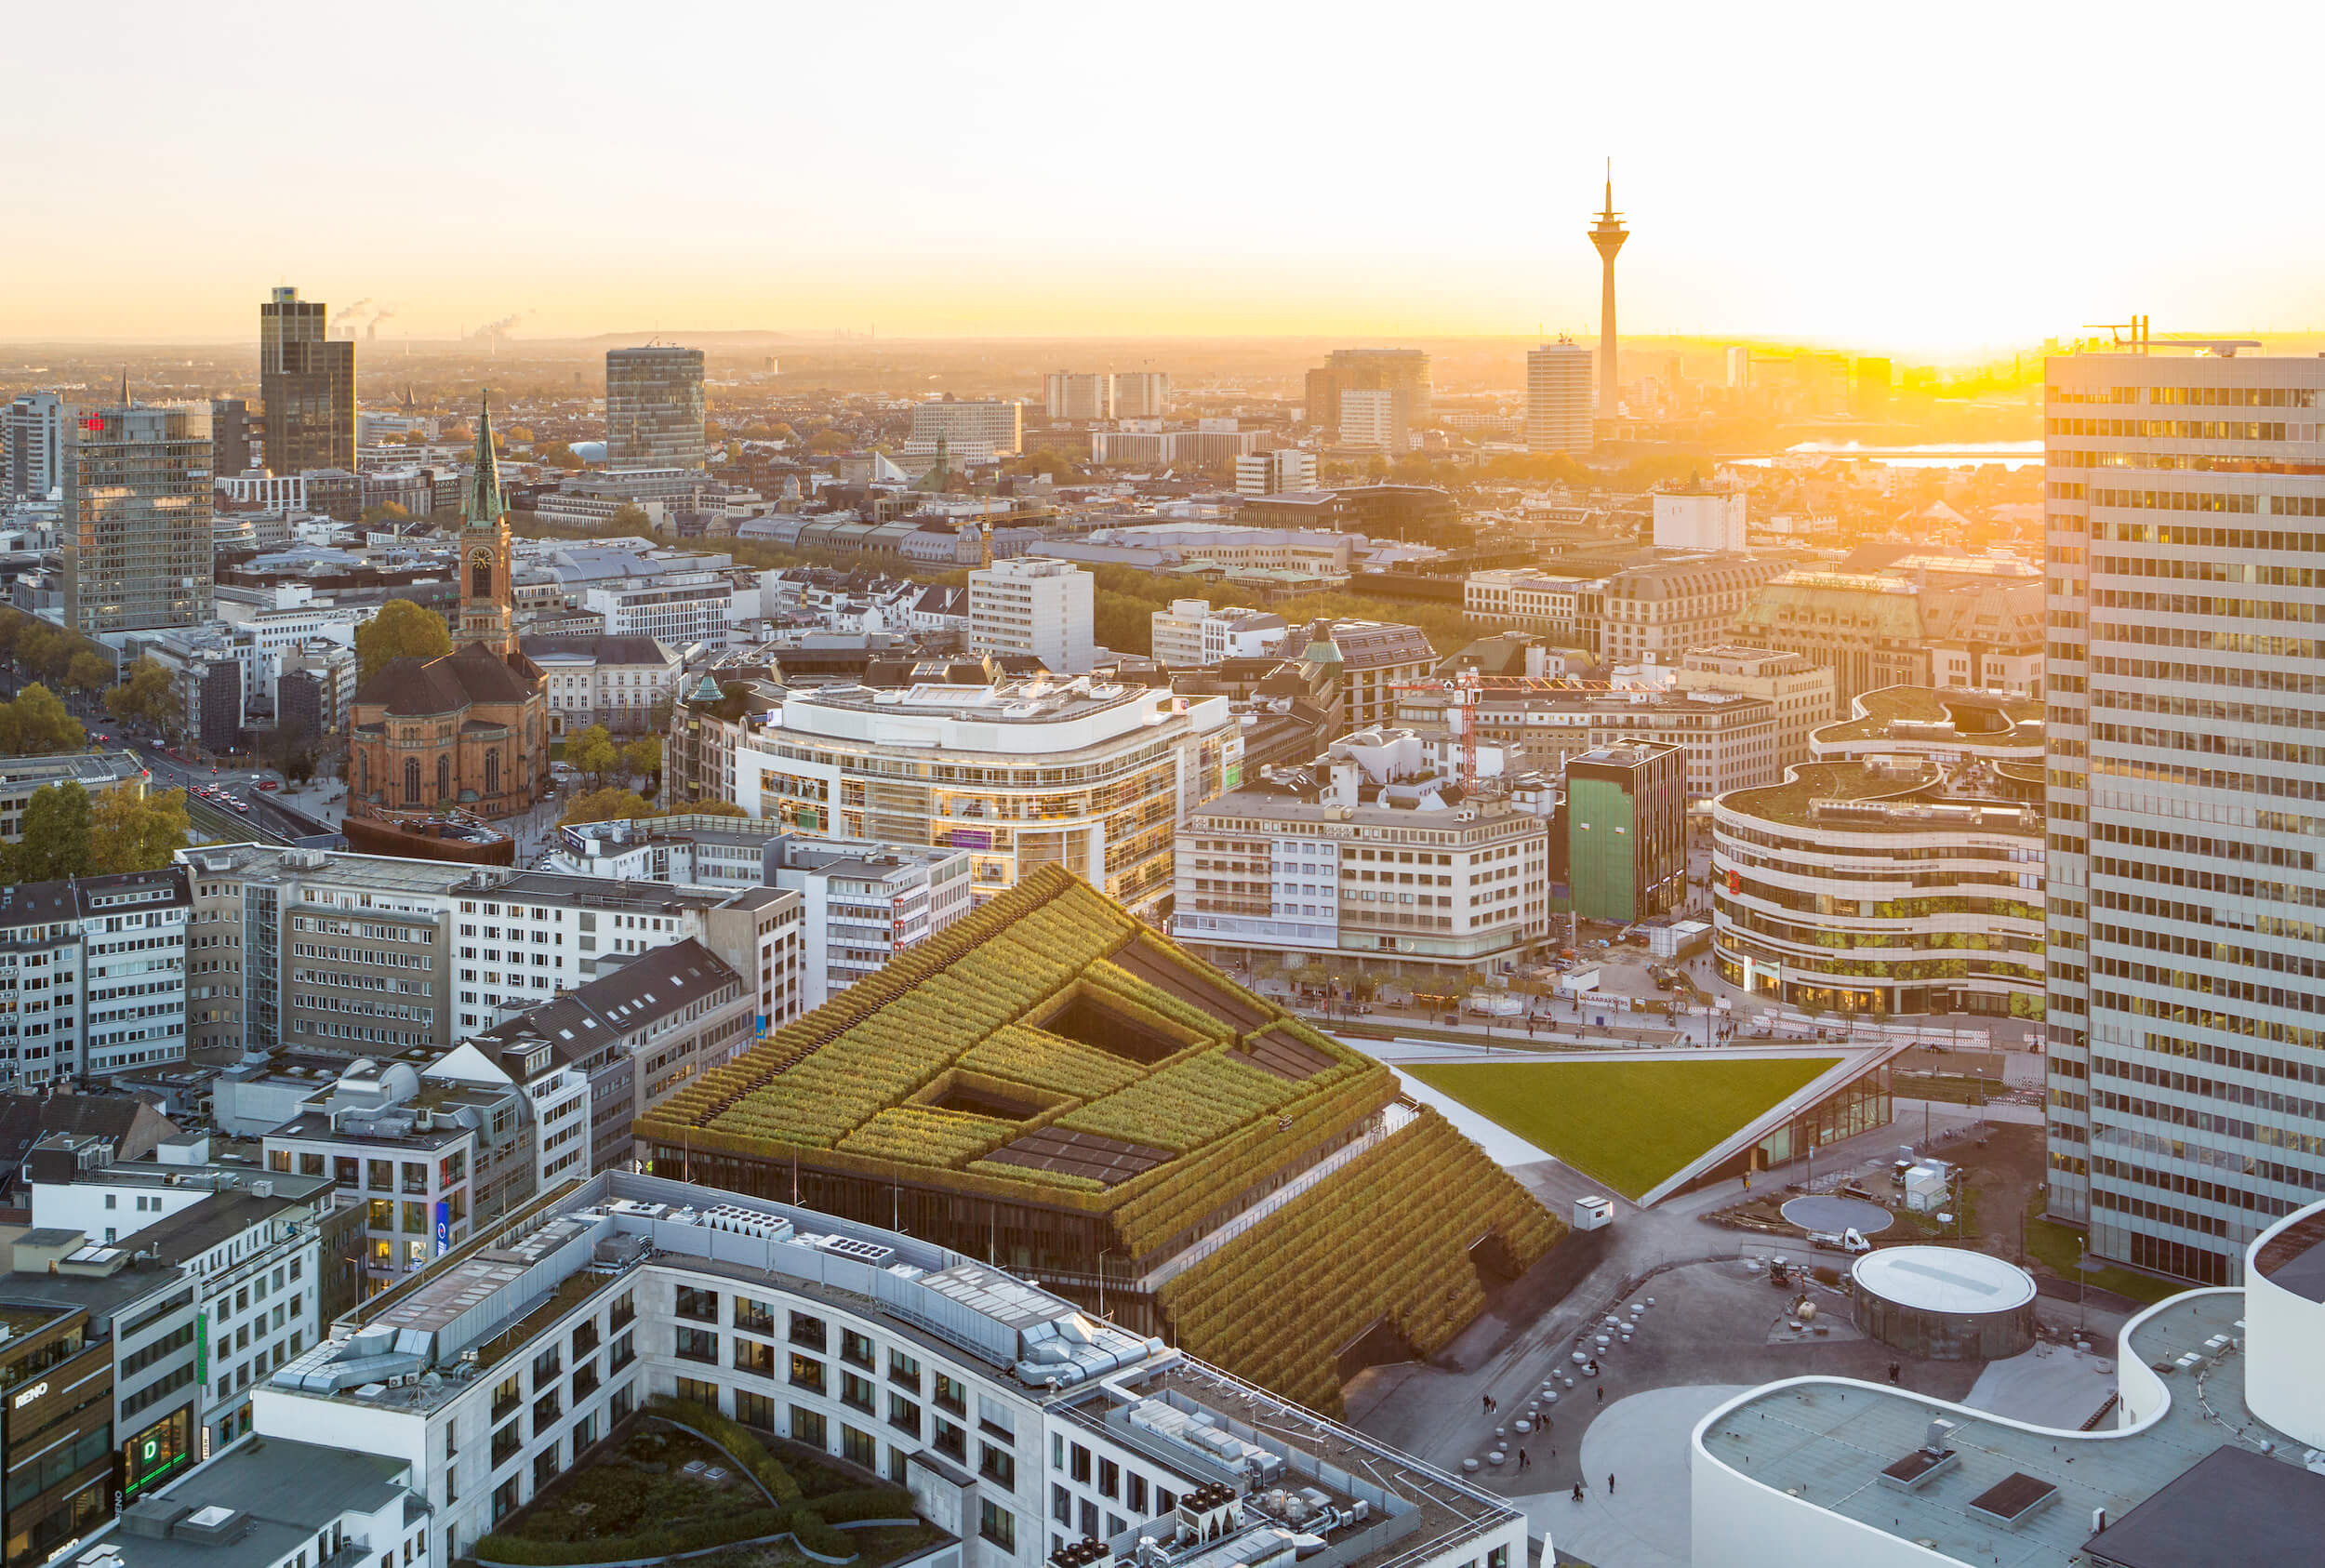 Kö-Bogen II, Düsseldorf, Europas größte Grünfassade, nachhaltige Architektur